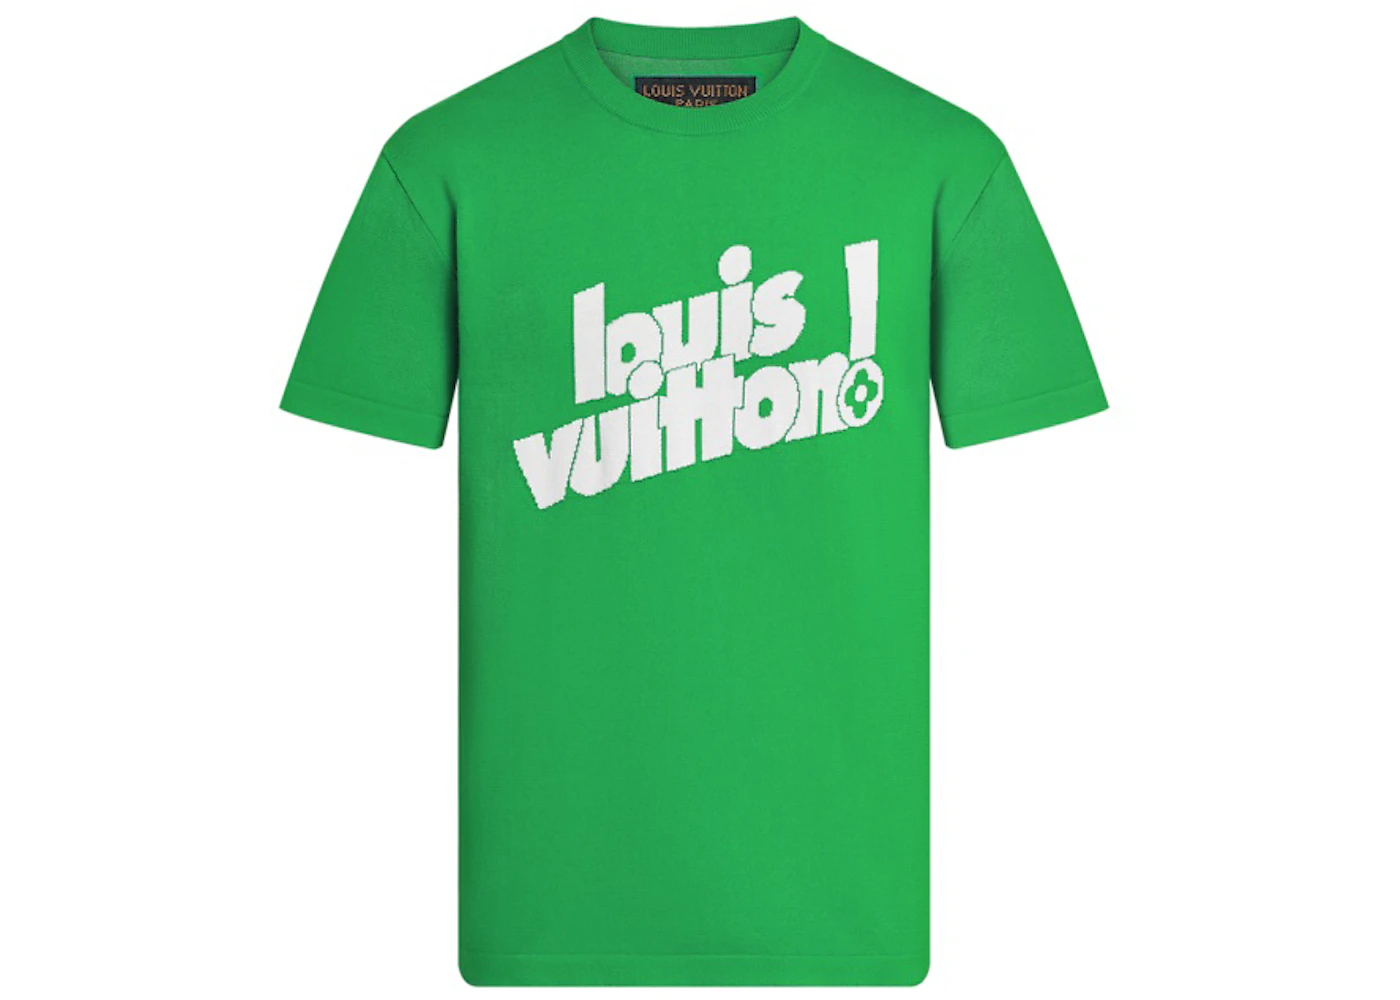 lv shirt green